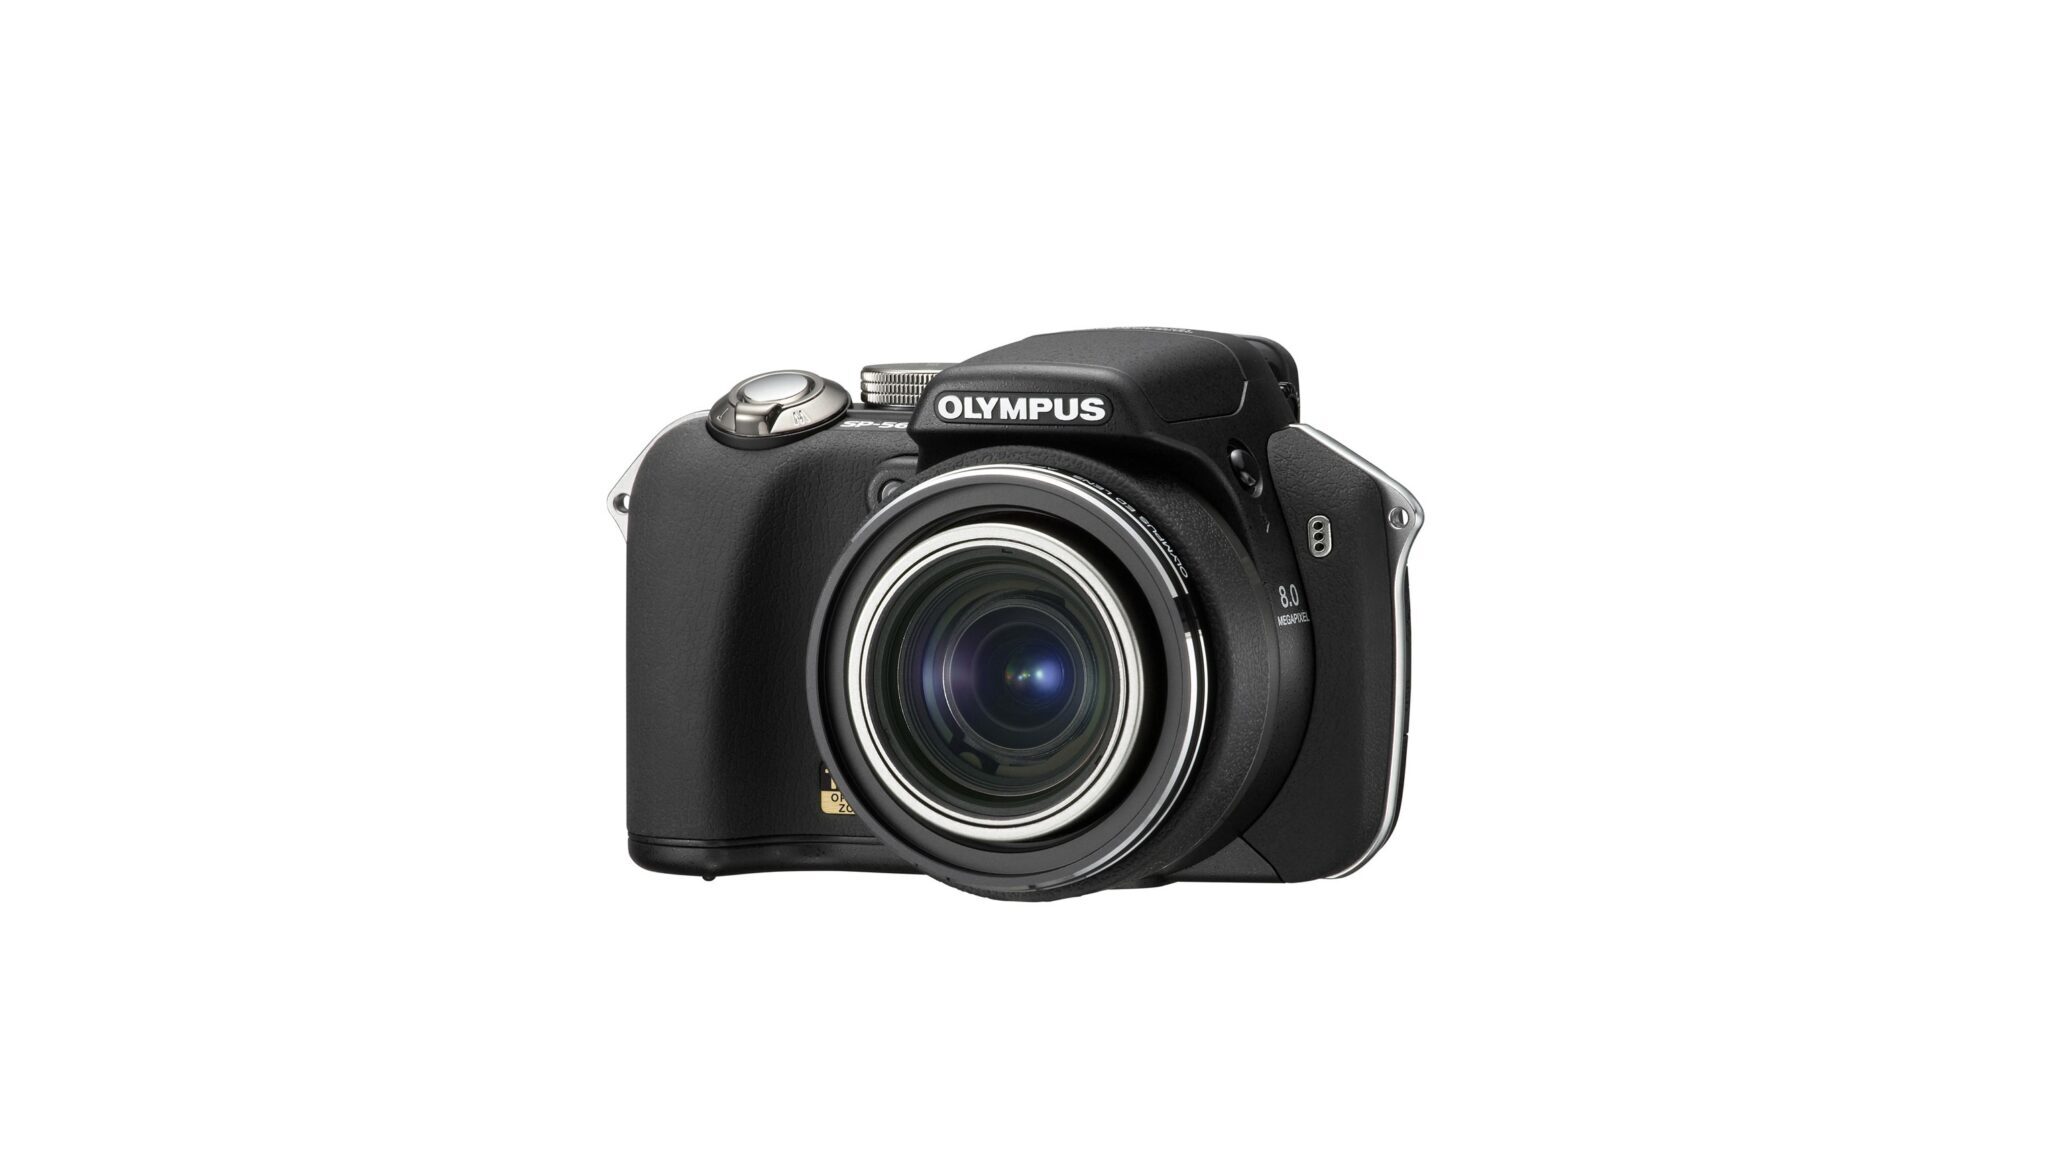 SP-560 UZ 8.0 Megapixel Digital Camera